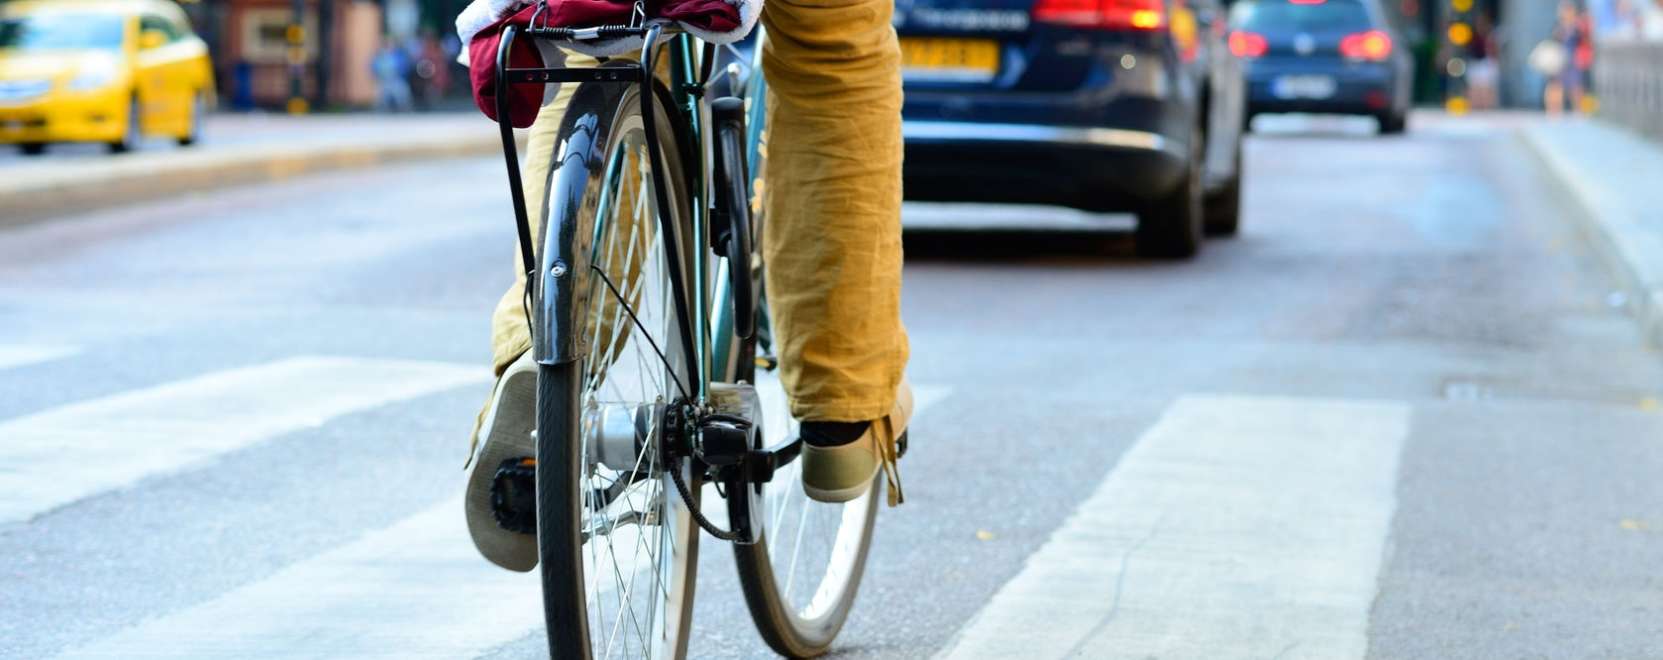 Életeket menthet a biciklivel kommunikáló autó